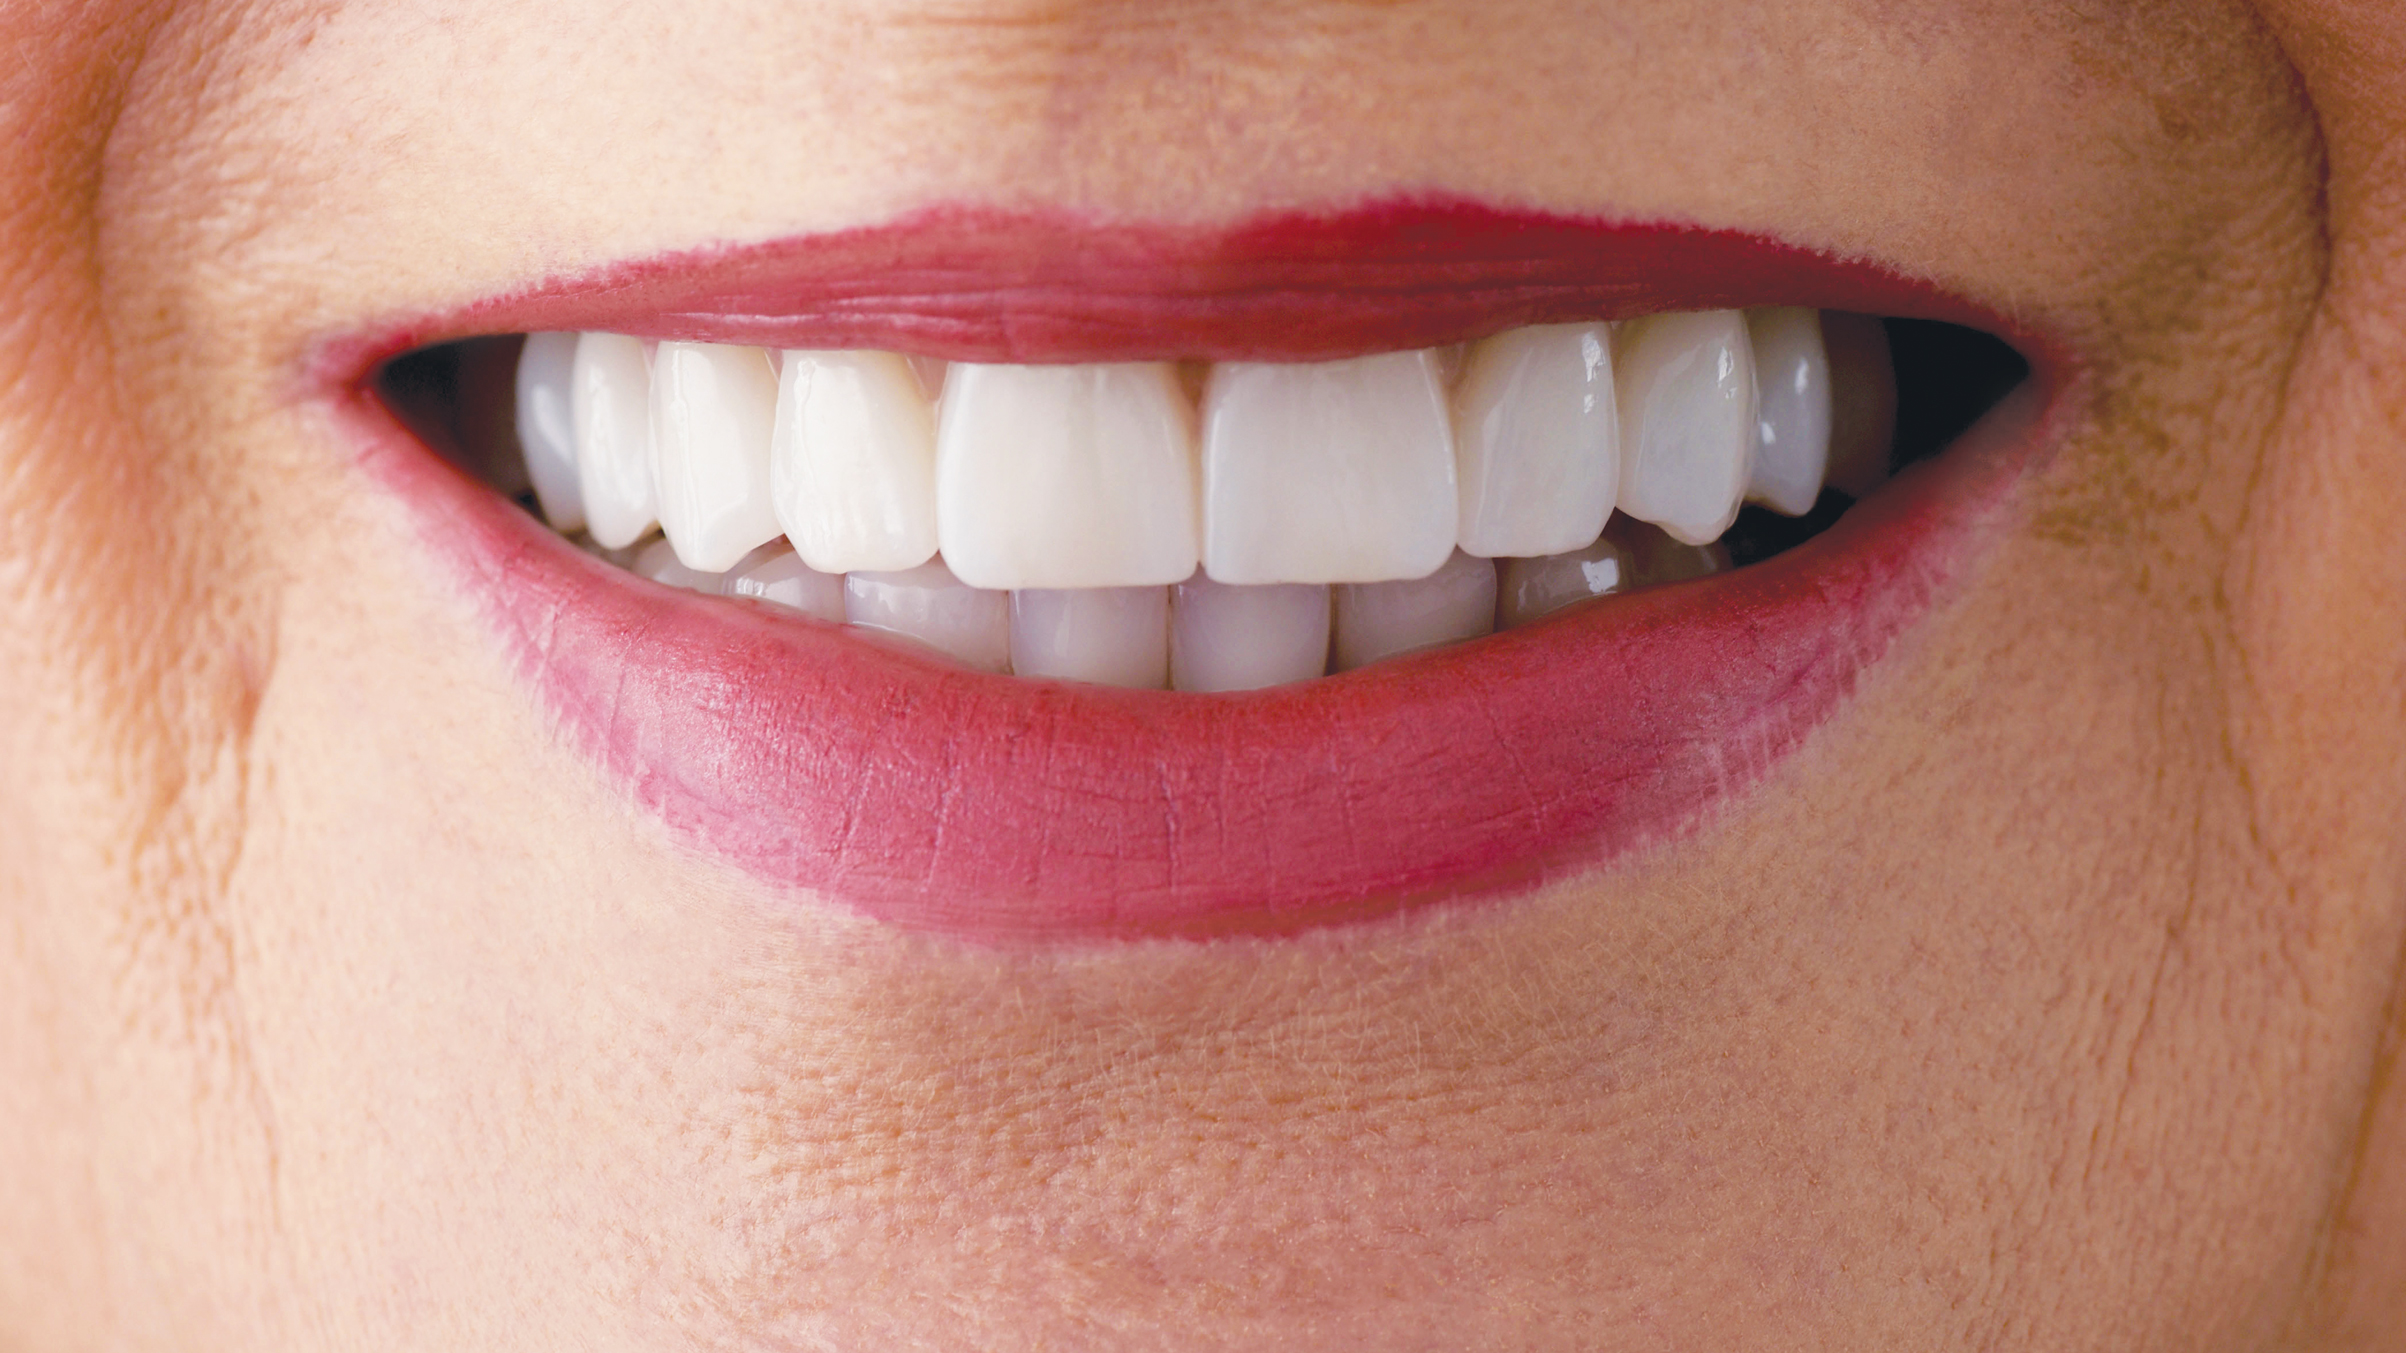 Donne e salute parodontale: Una ricorrenza per riflettere sulla salute orale femminile